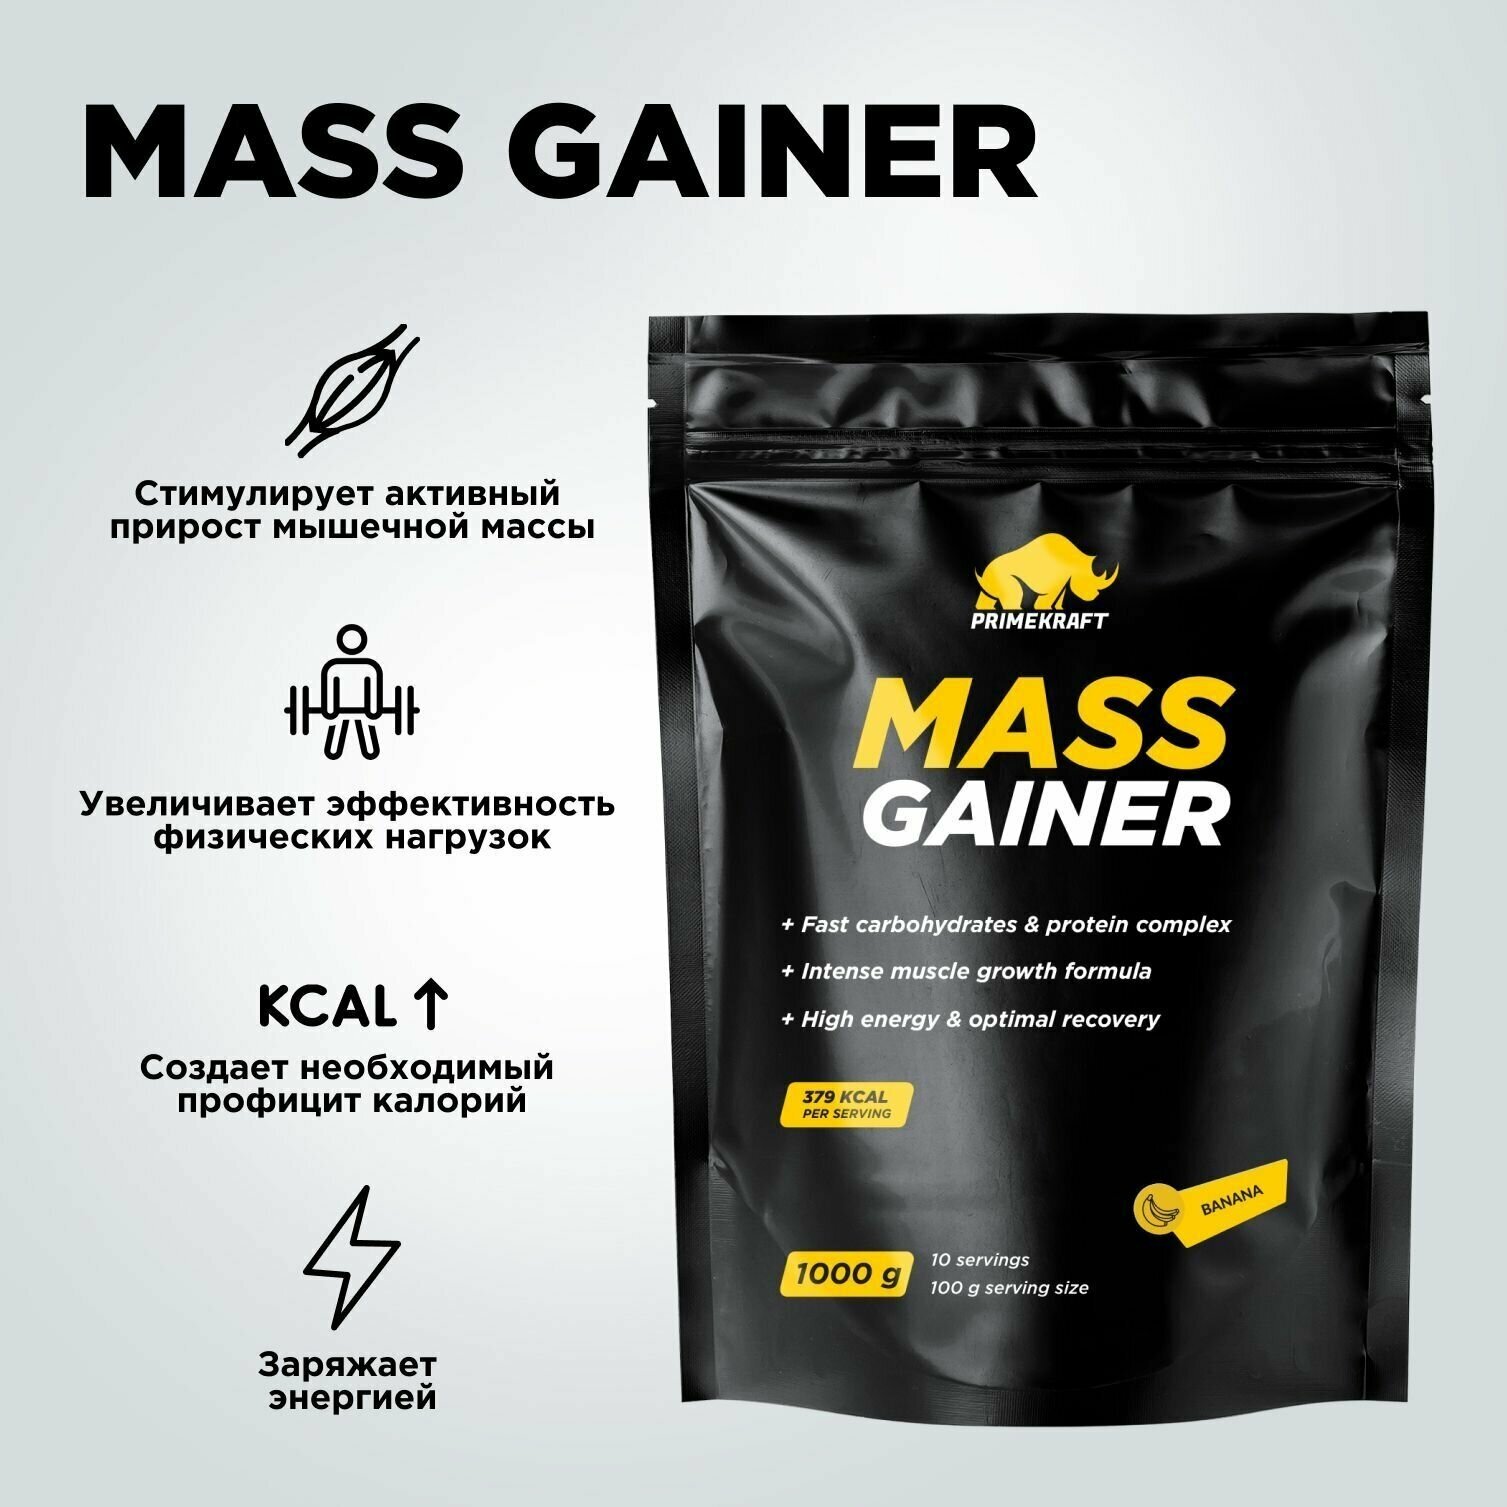 Гейнер белково-углеводный PRIMEKRAFT/ MASS GAINER для набора массы со вкусом "Банан" 1000 гр